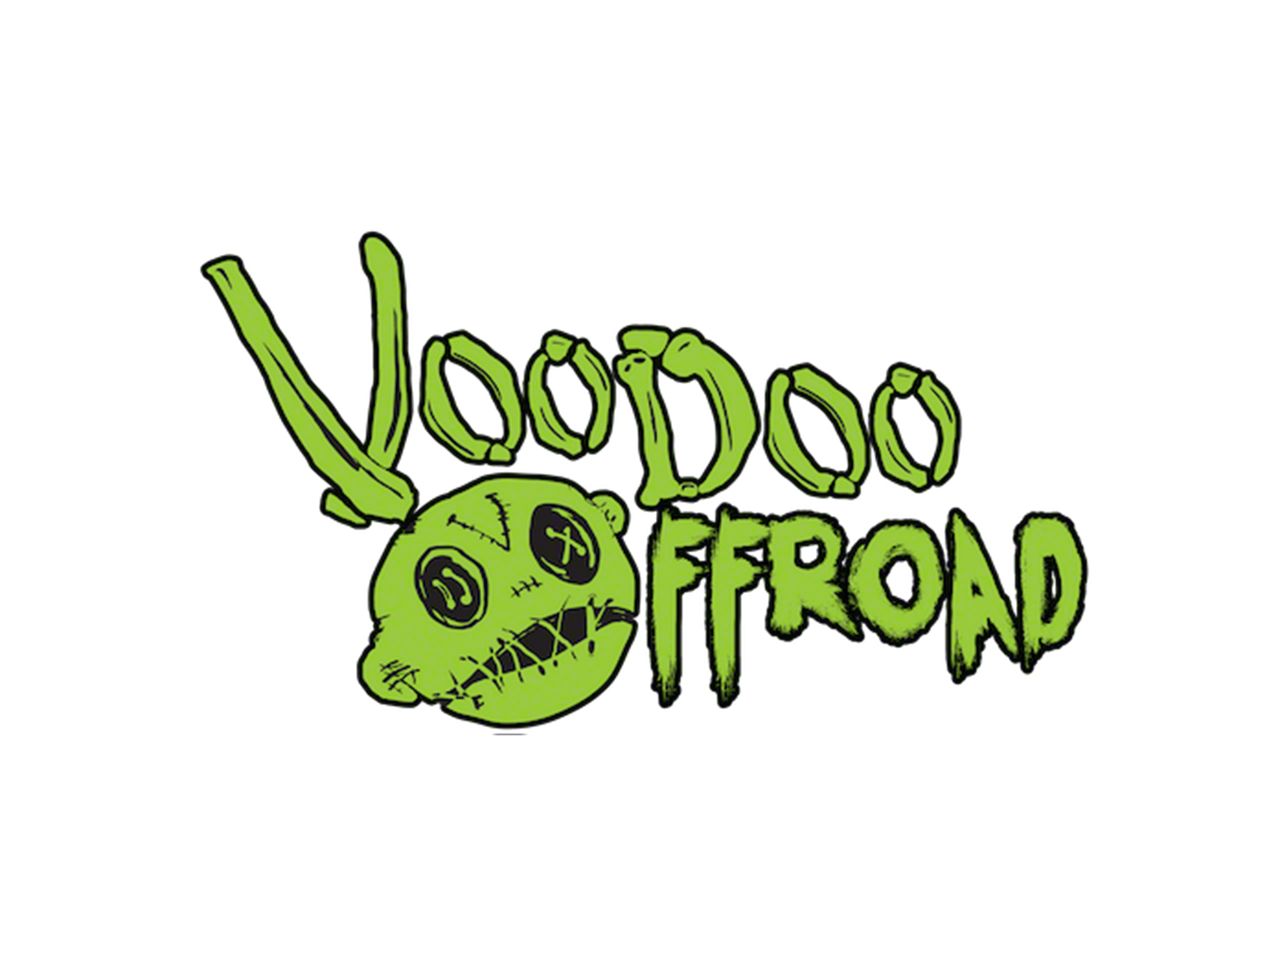 VooDoo Offroad Parts